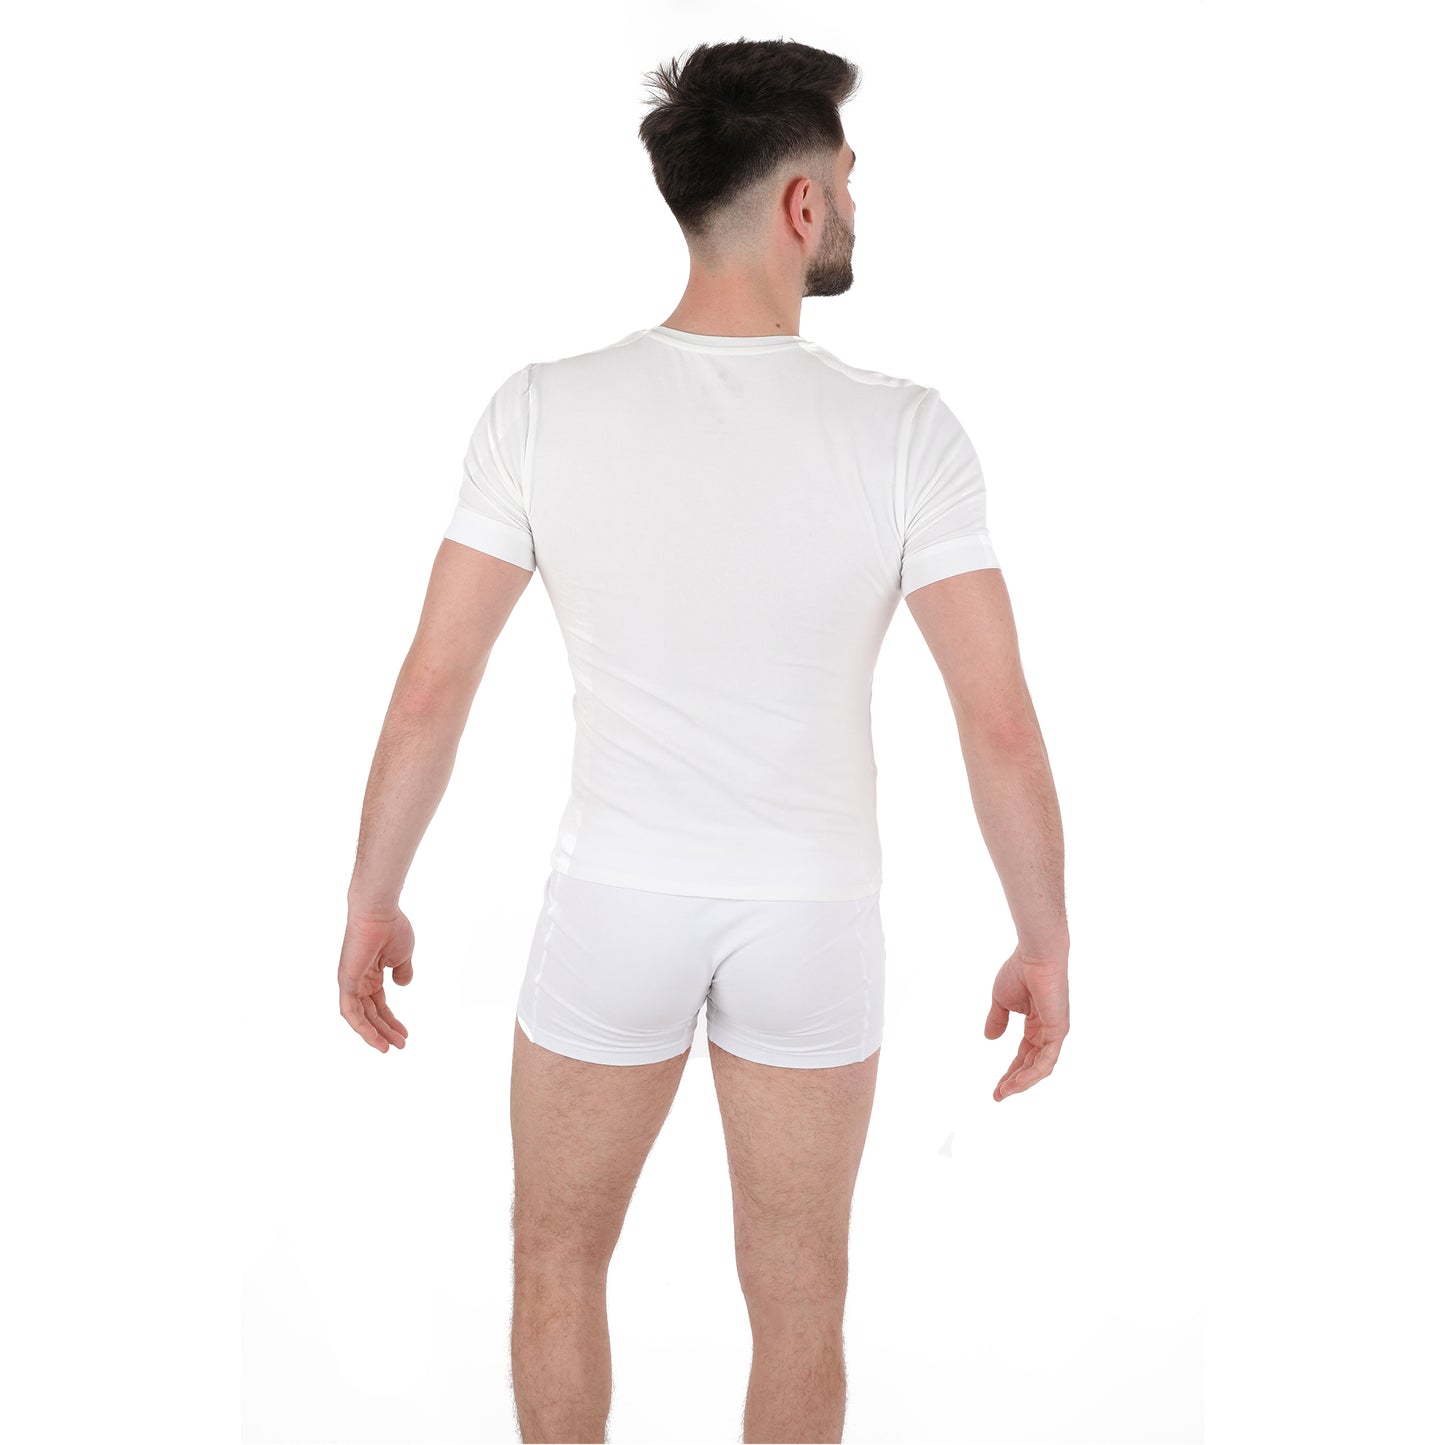 V-neck white T-shirt for men – pack of 2/4